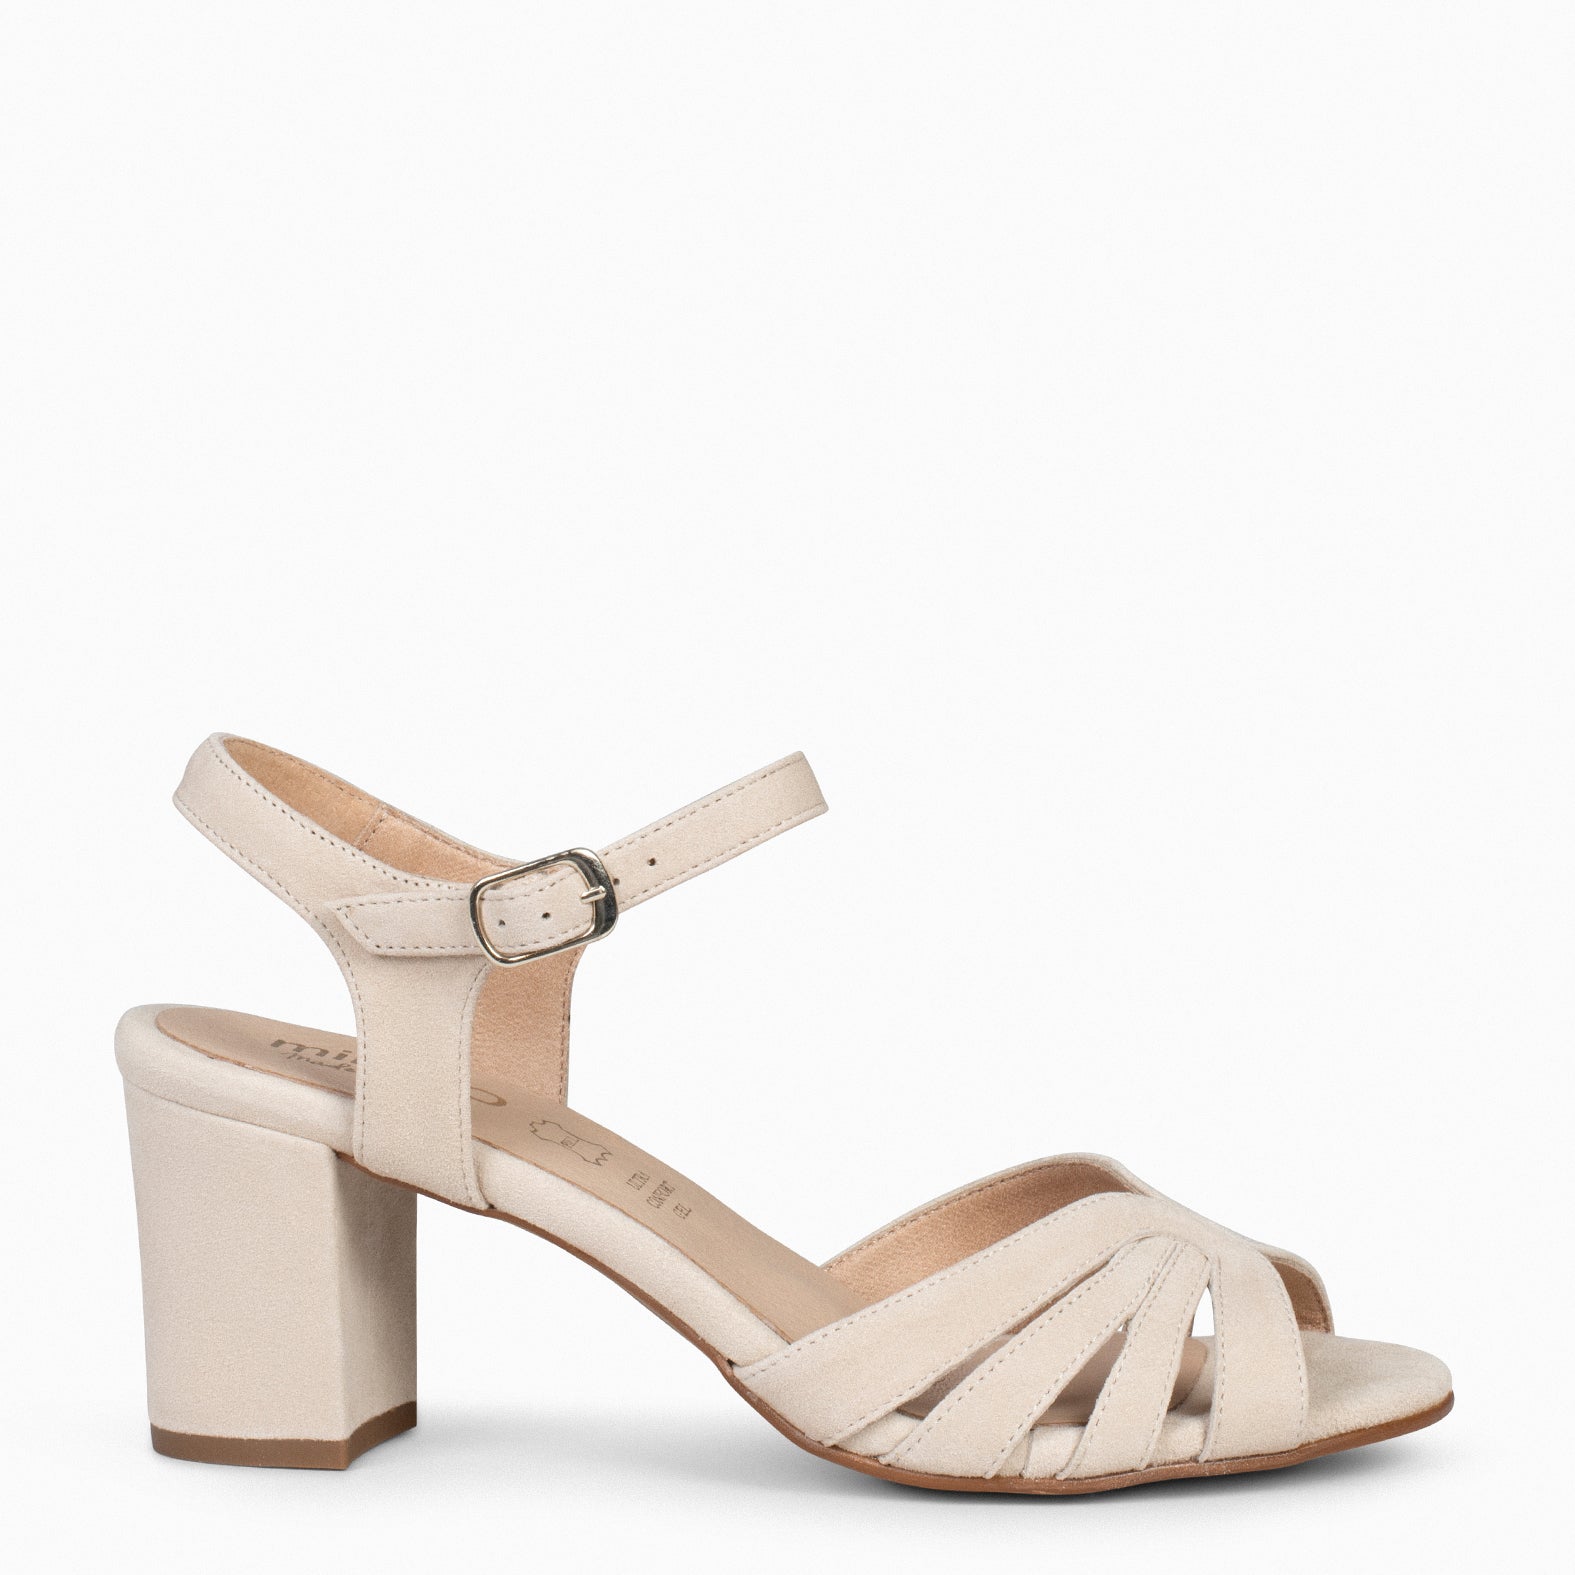 MUSE – BEIGE block heel sandals